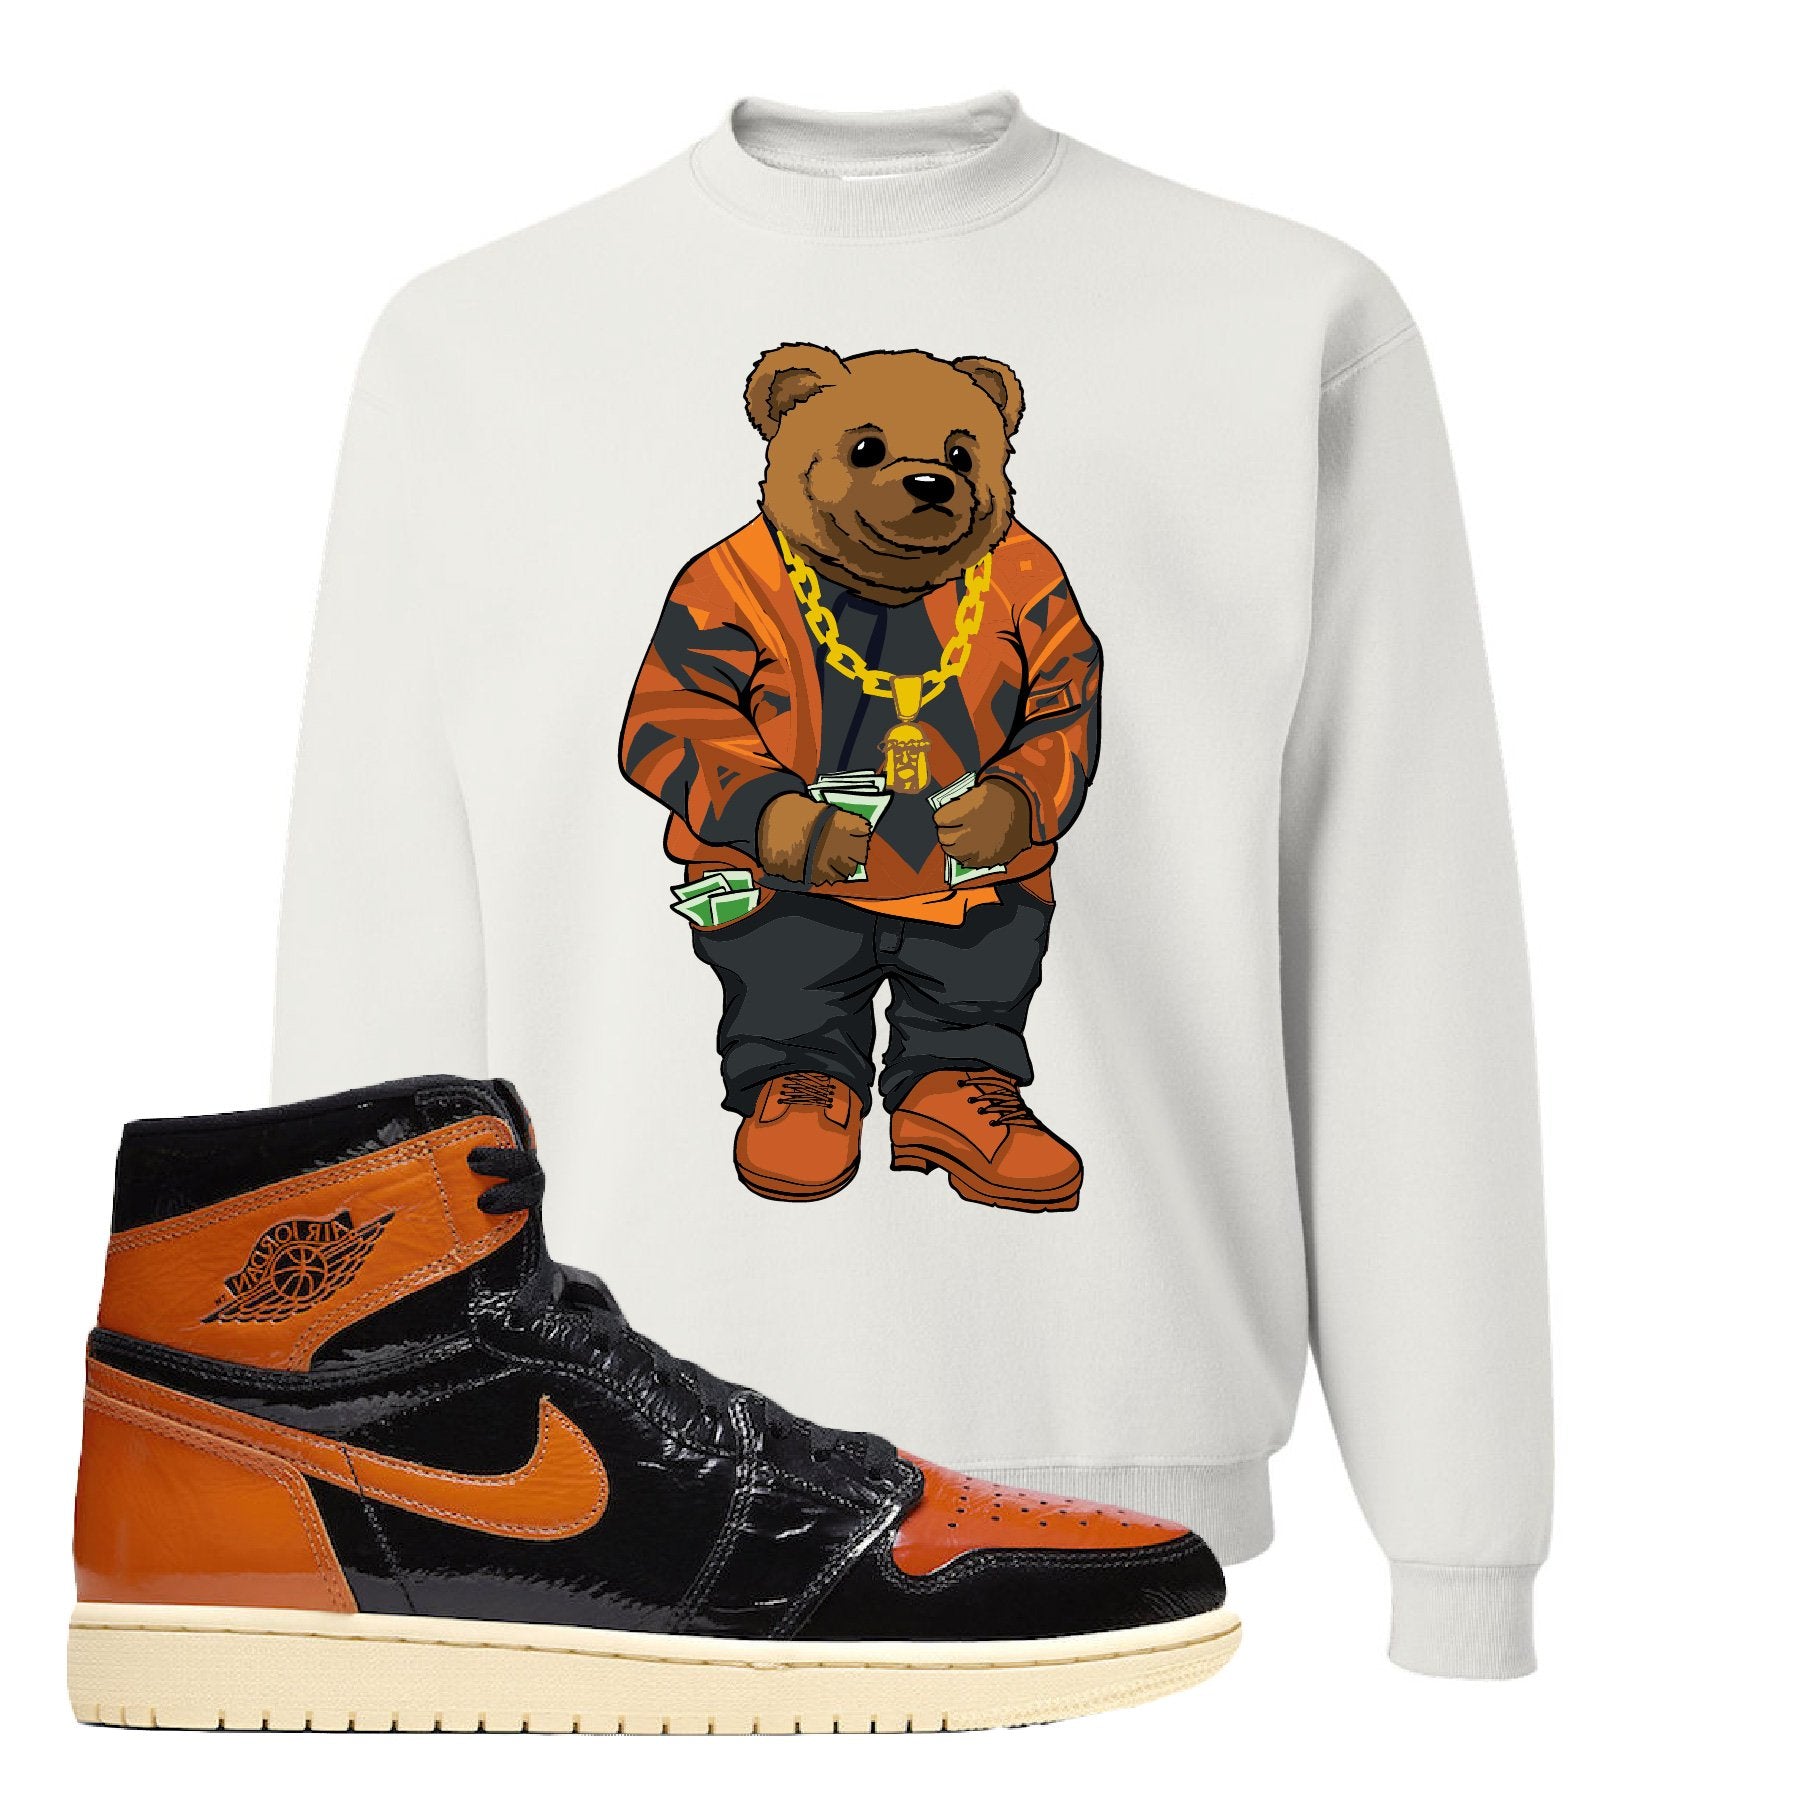 Jordan 1 Shattered Backboard Sweater Bear White Sneaker Hook Up Crewneck Sweatshirt